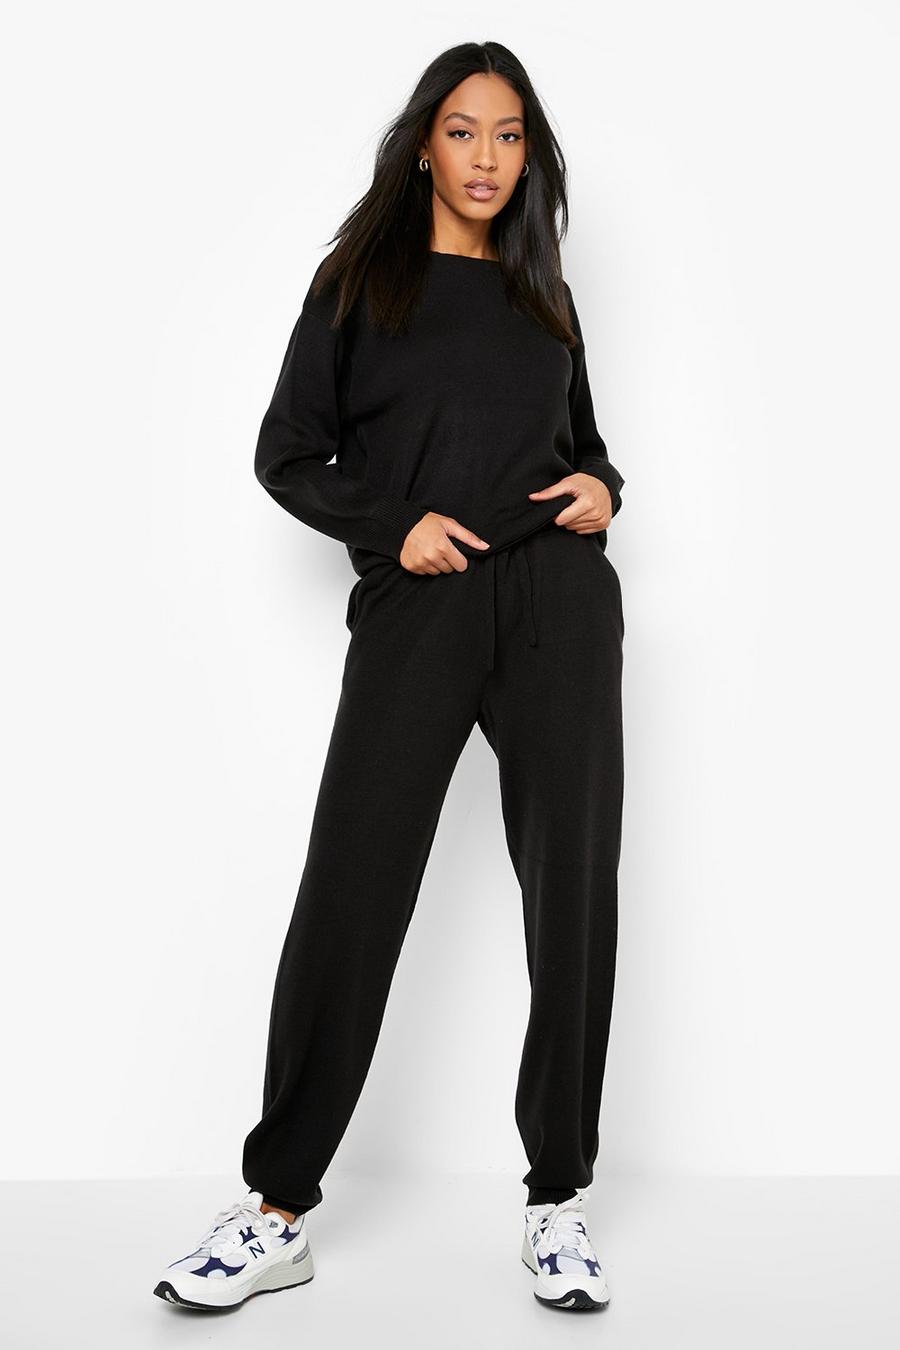 שחור black סט בגדי בית סרוגים עם צווארון אלכסוני לנשים גבוהות